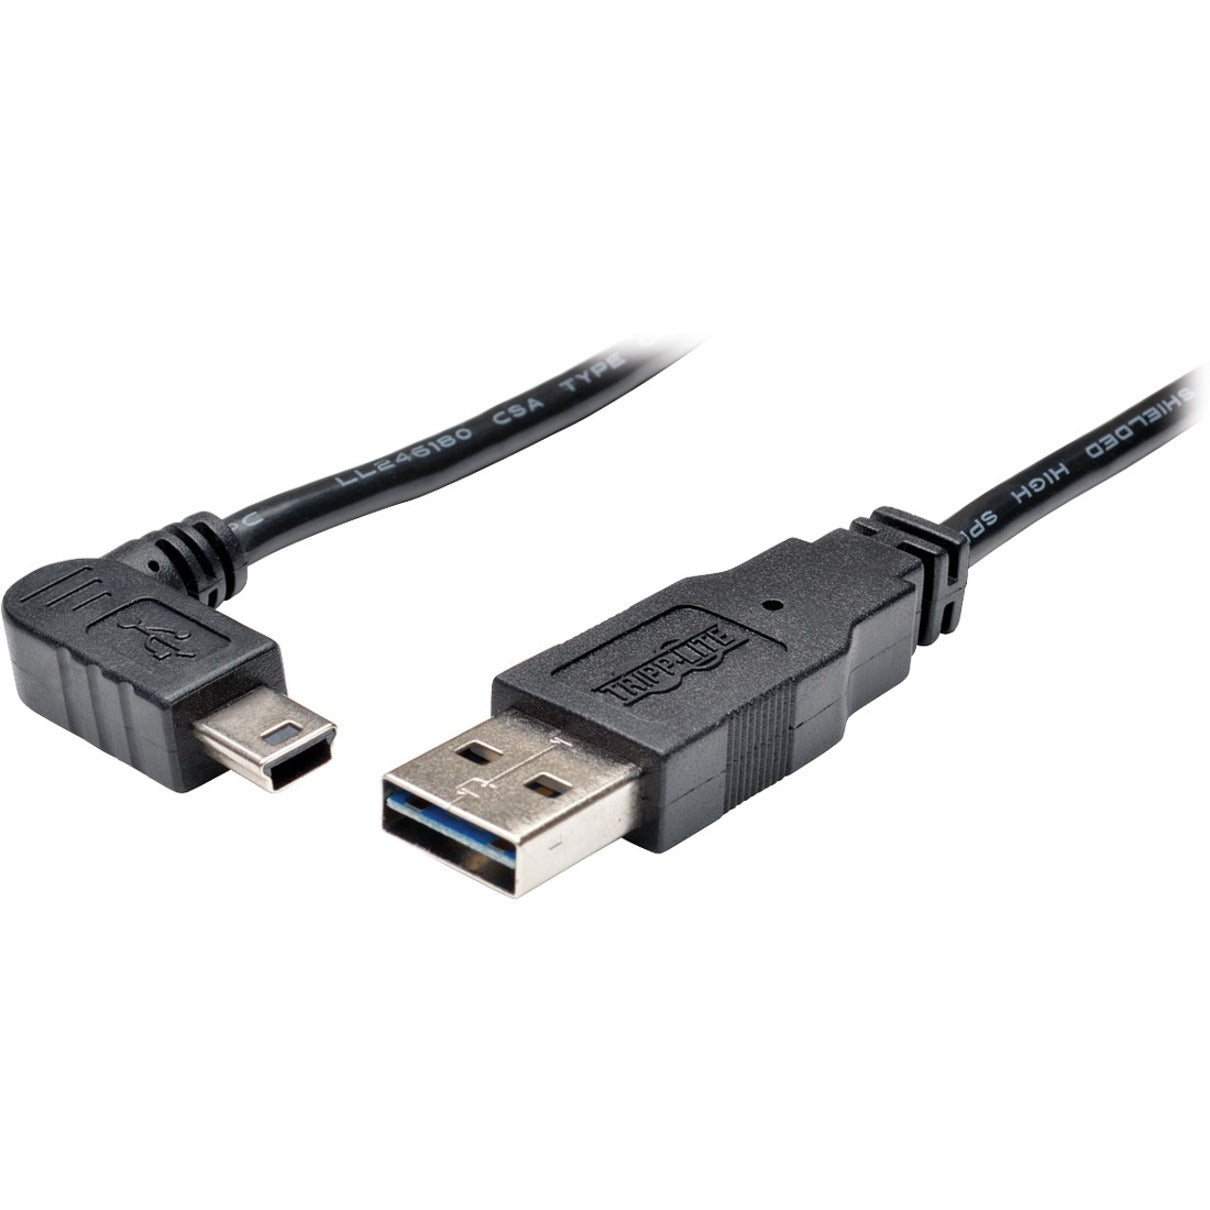 تريب لايت كيبل نقل بيانات USB UR030-006-RAB، 6 قدم، من نوع Mini USB 2.0 Type B - ذكر، زاوية يمينية قابلة للعكس